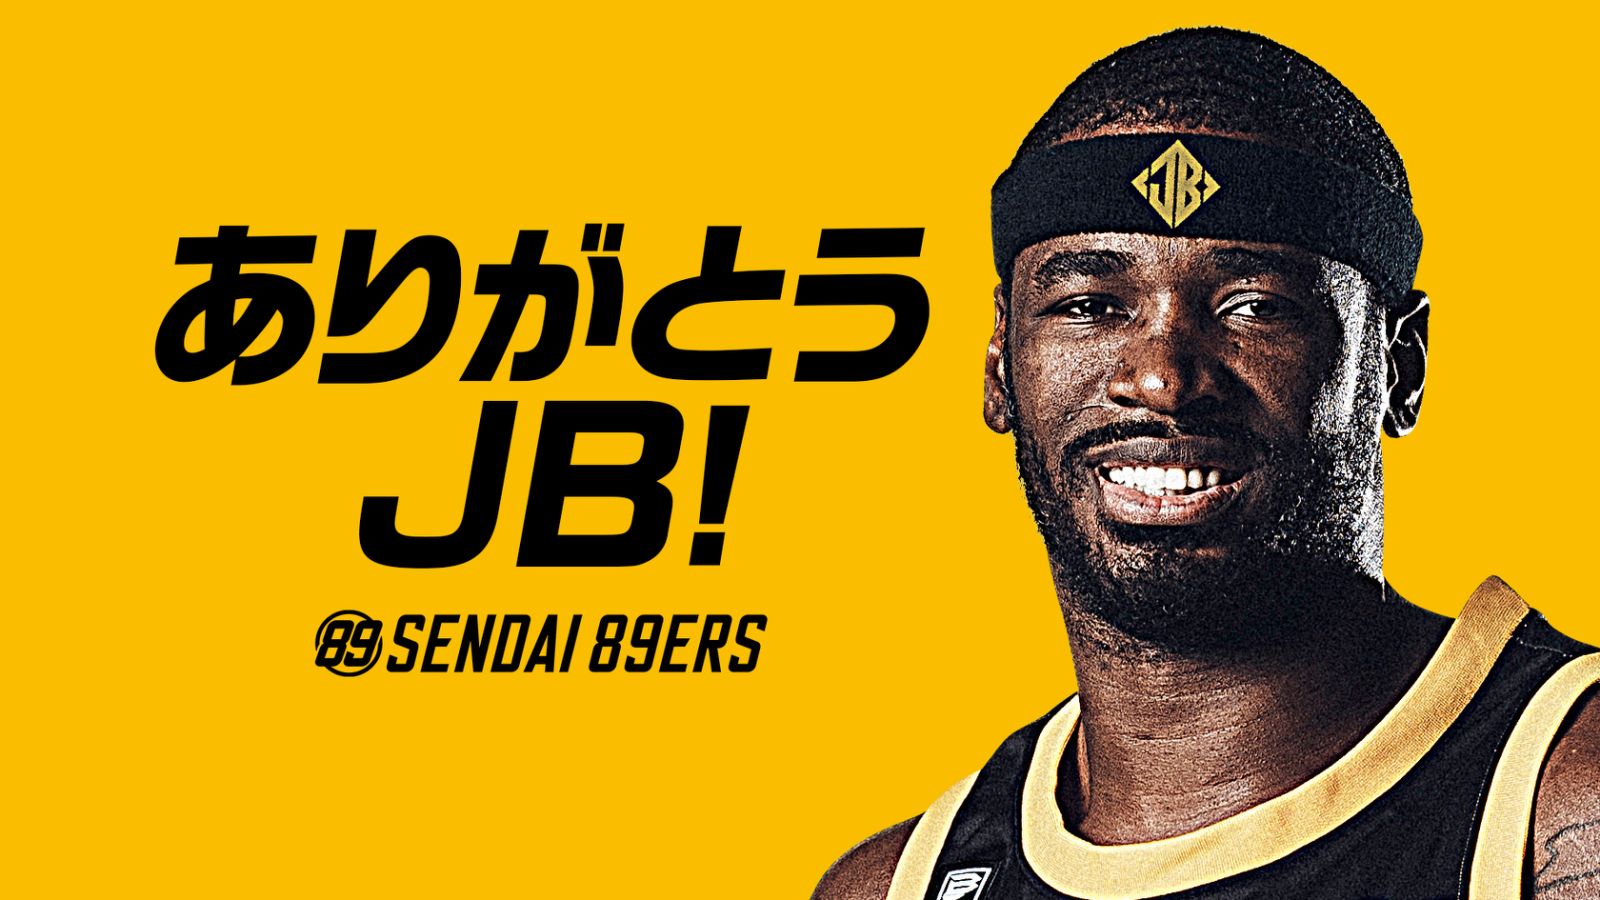 ジャスティン・バーレル選手契約満了と移籍先決定のお知らせ | 仙台89ERS